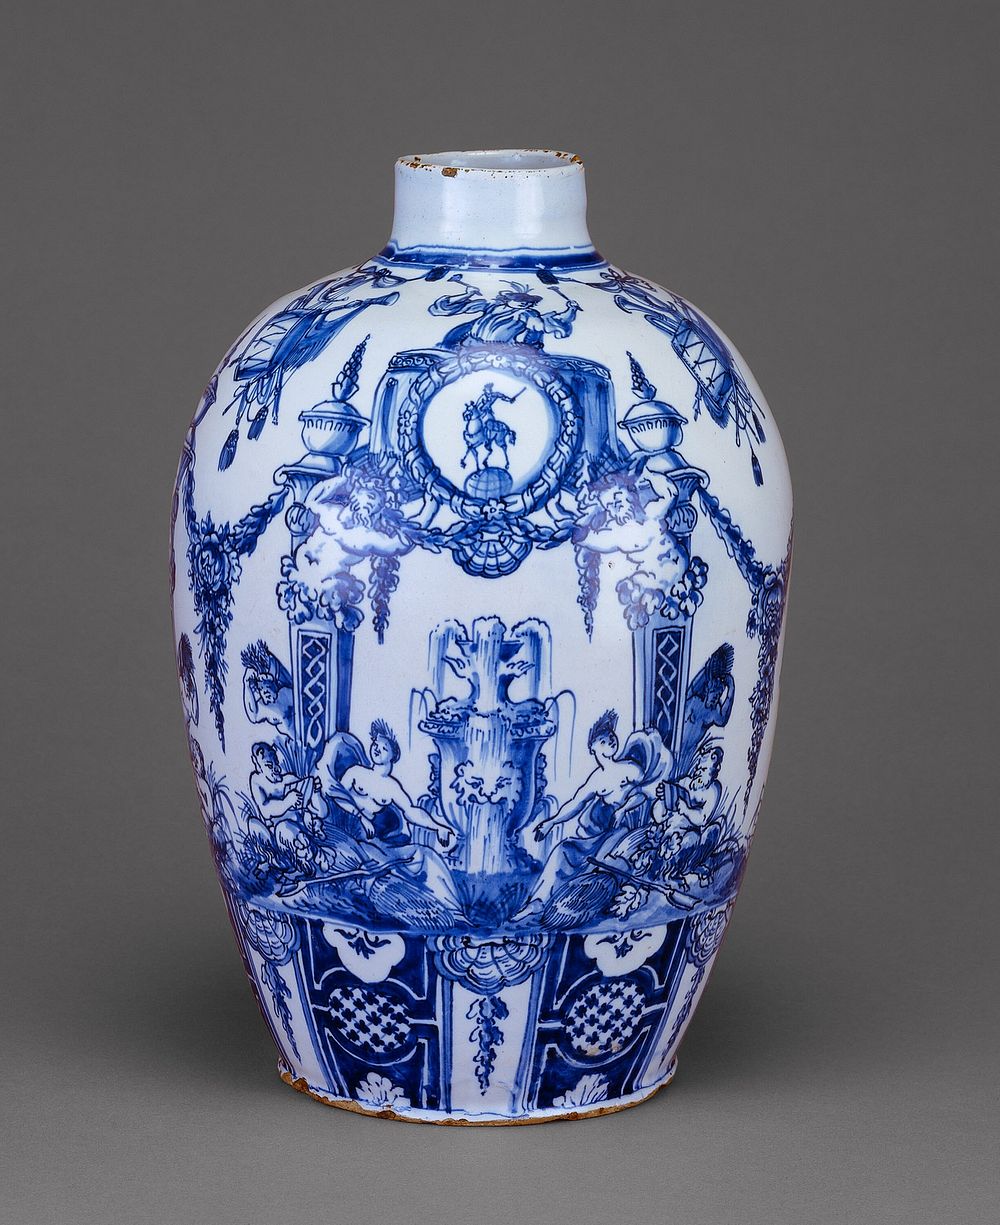 Vase by Grieksche A Factory (Maker)